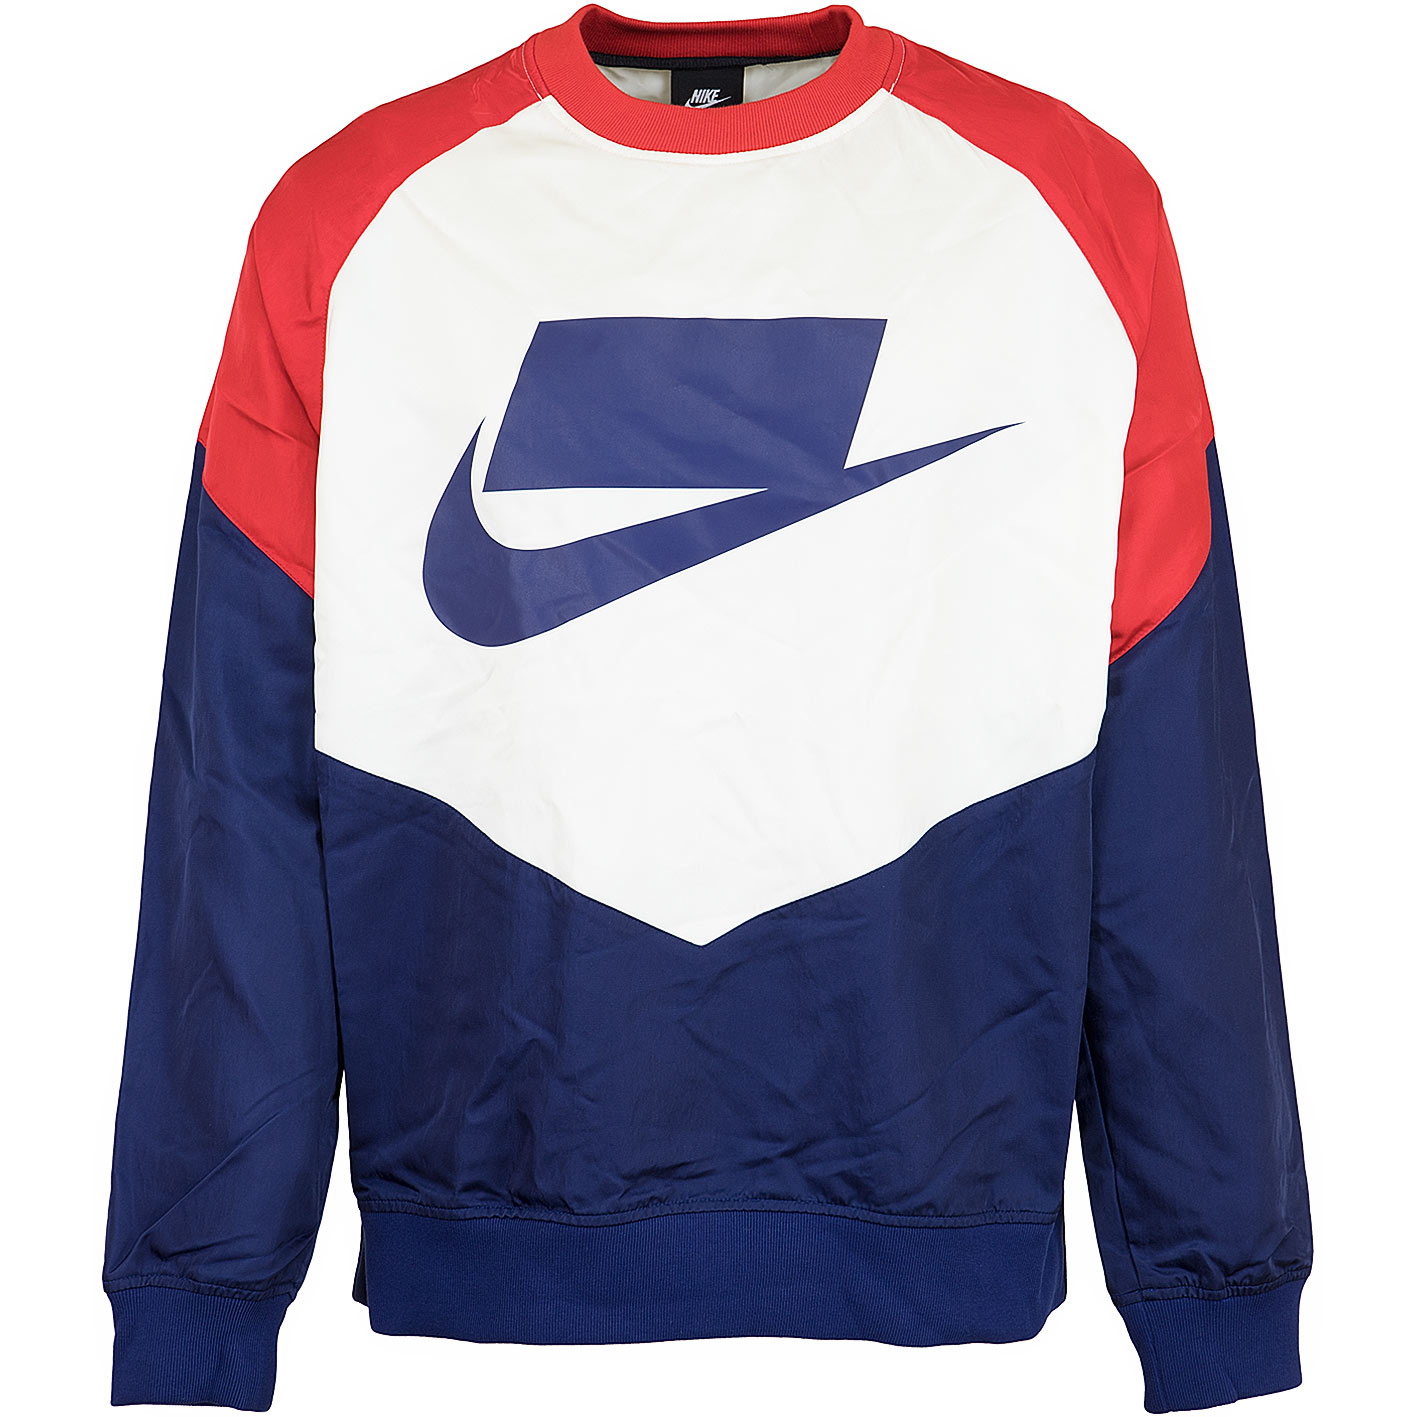 ☆ Nike Sweatshirt NSP Woven blau/rot - hier bestellen!